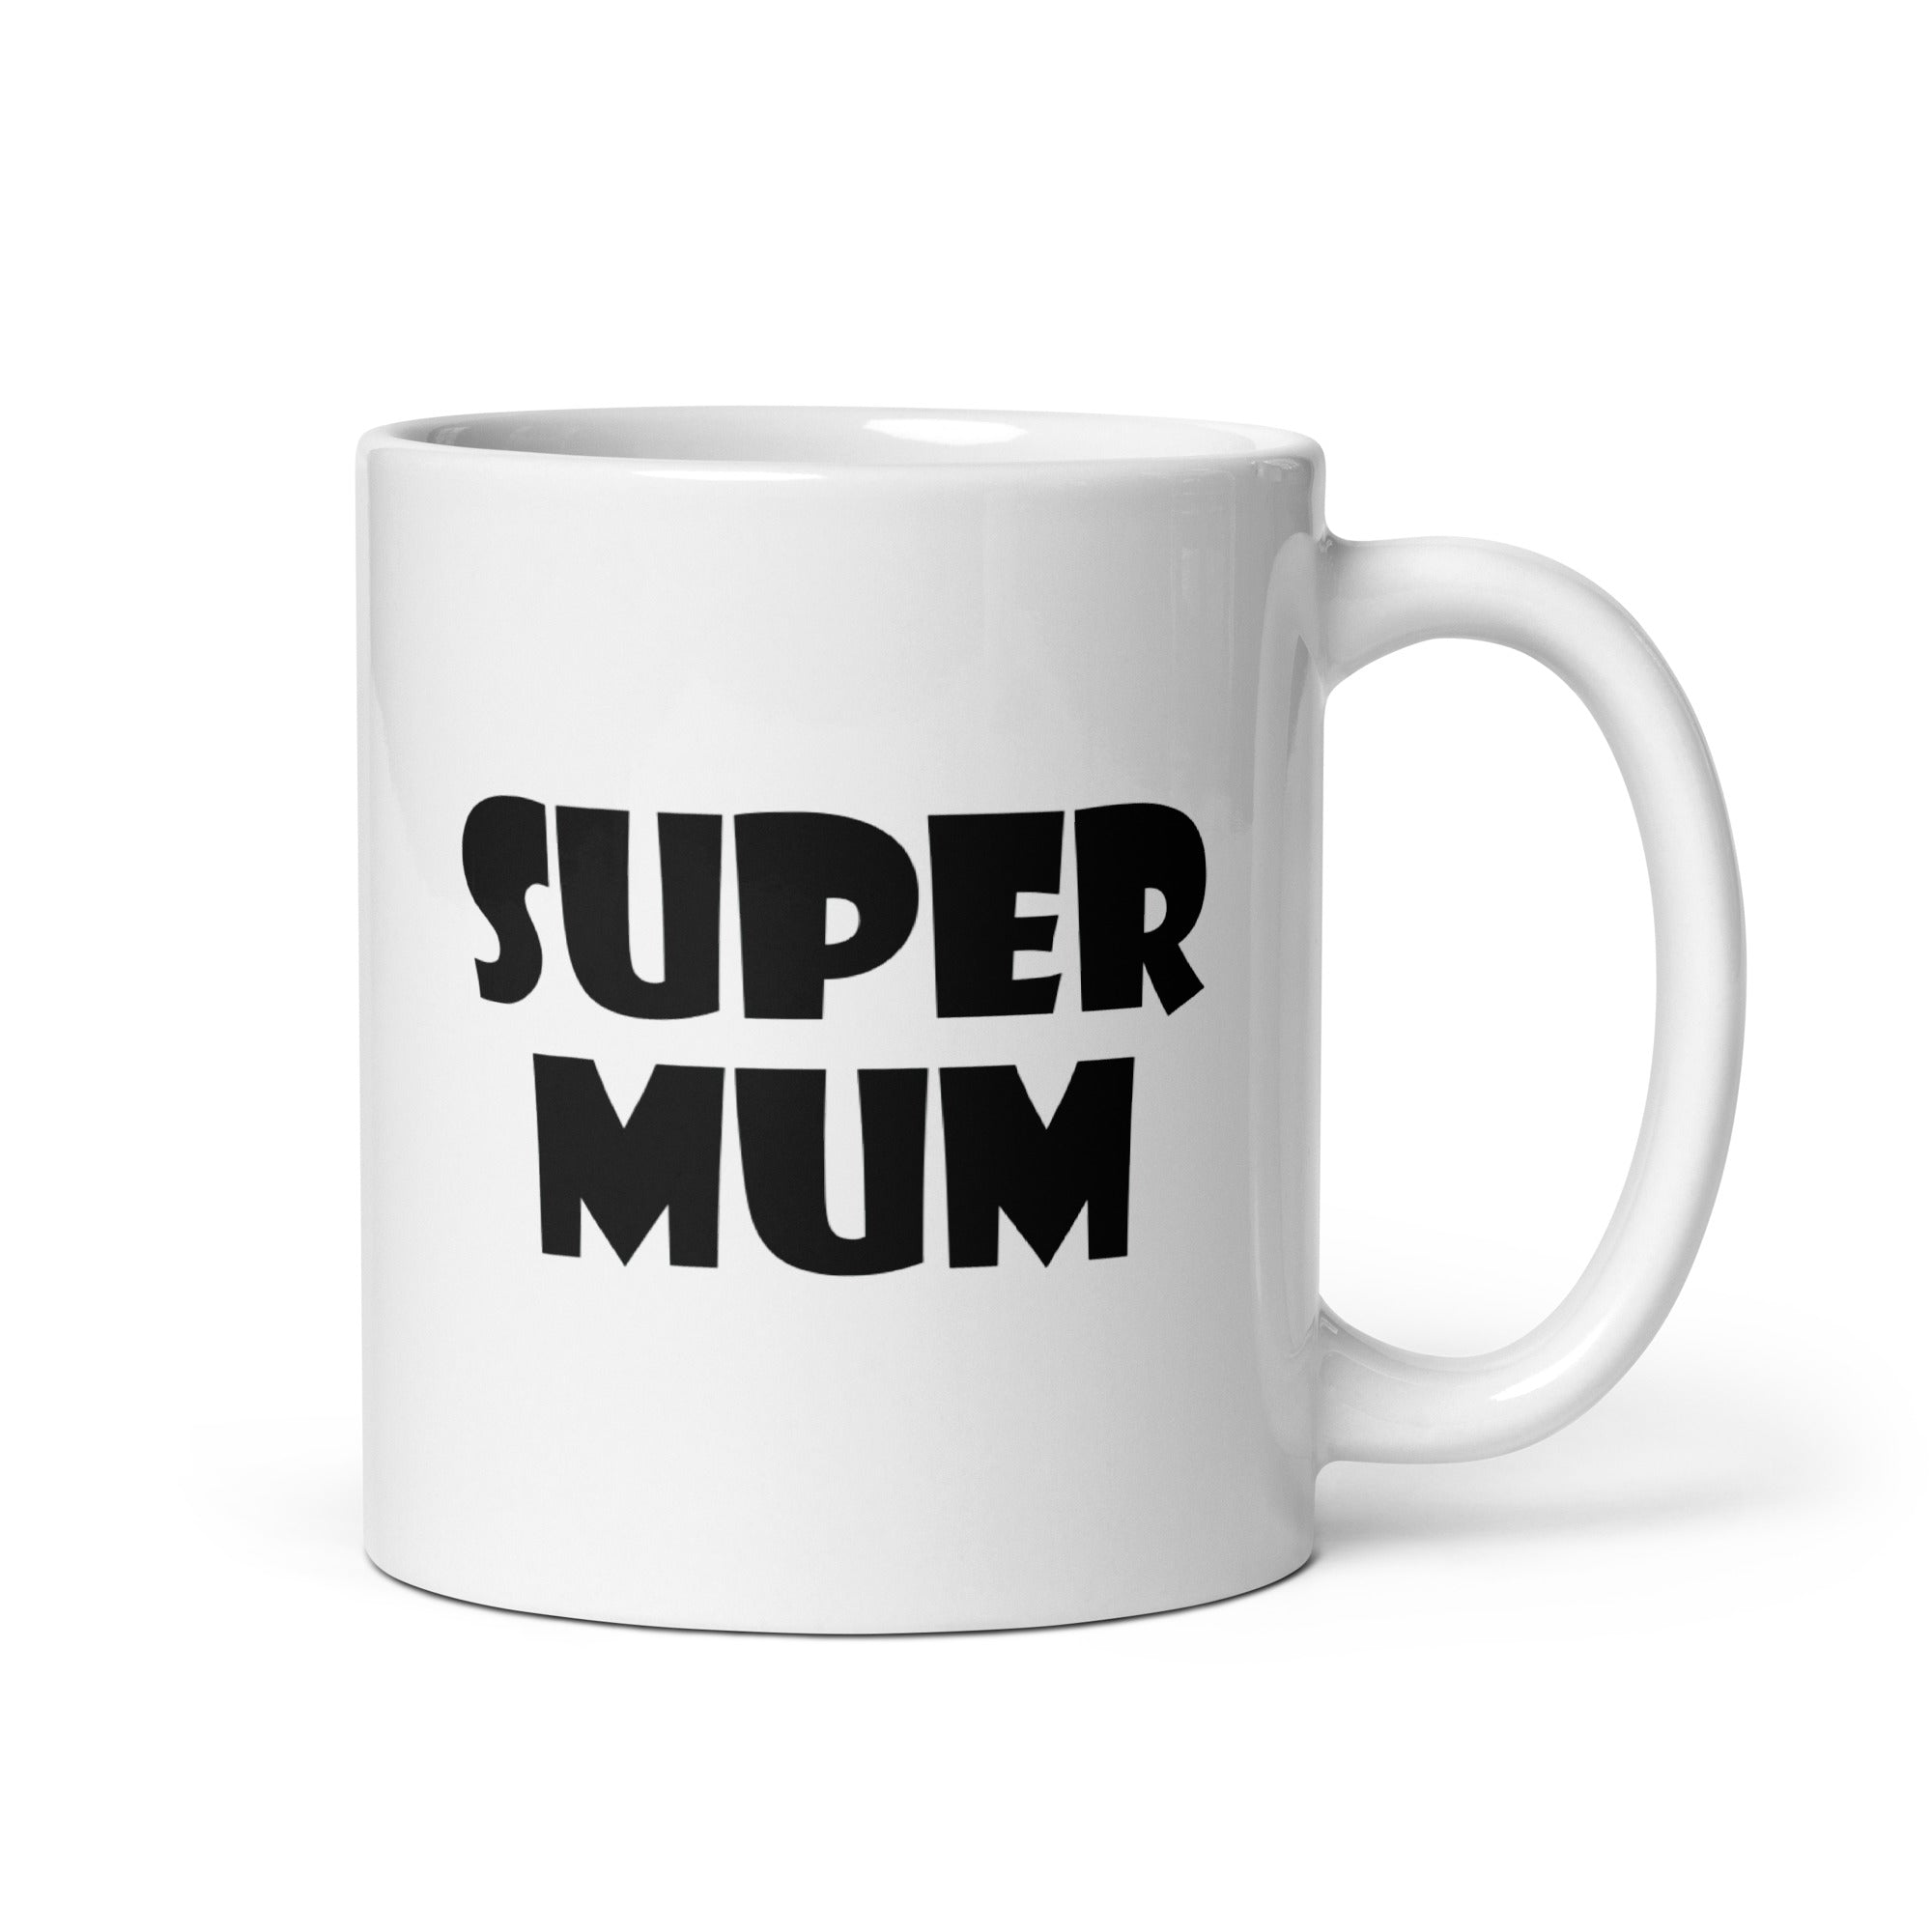 White glossy mug | Super mum